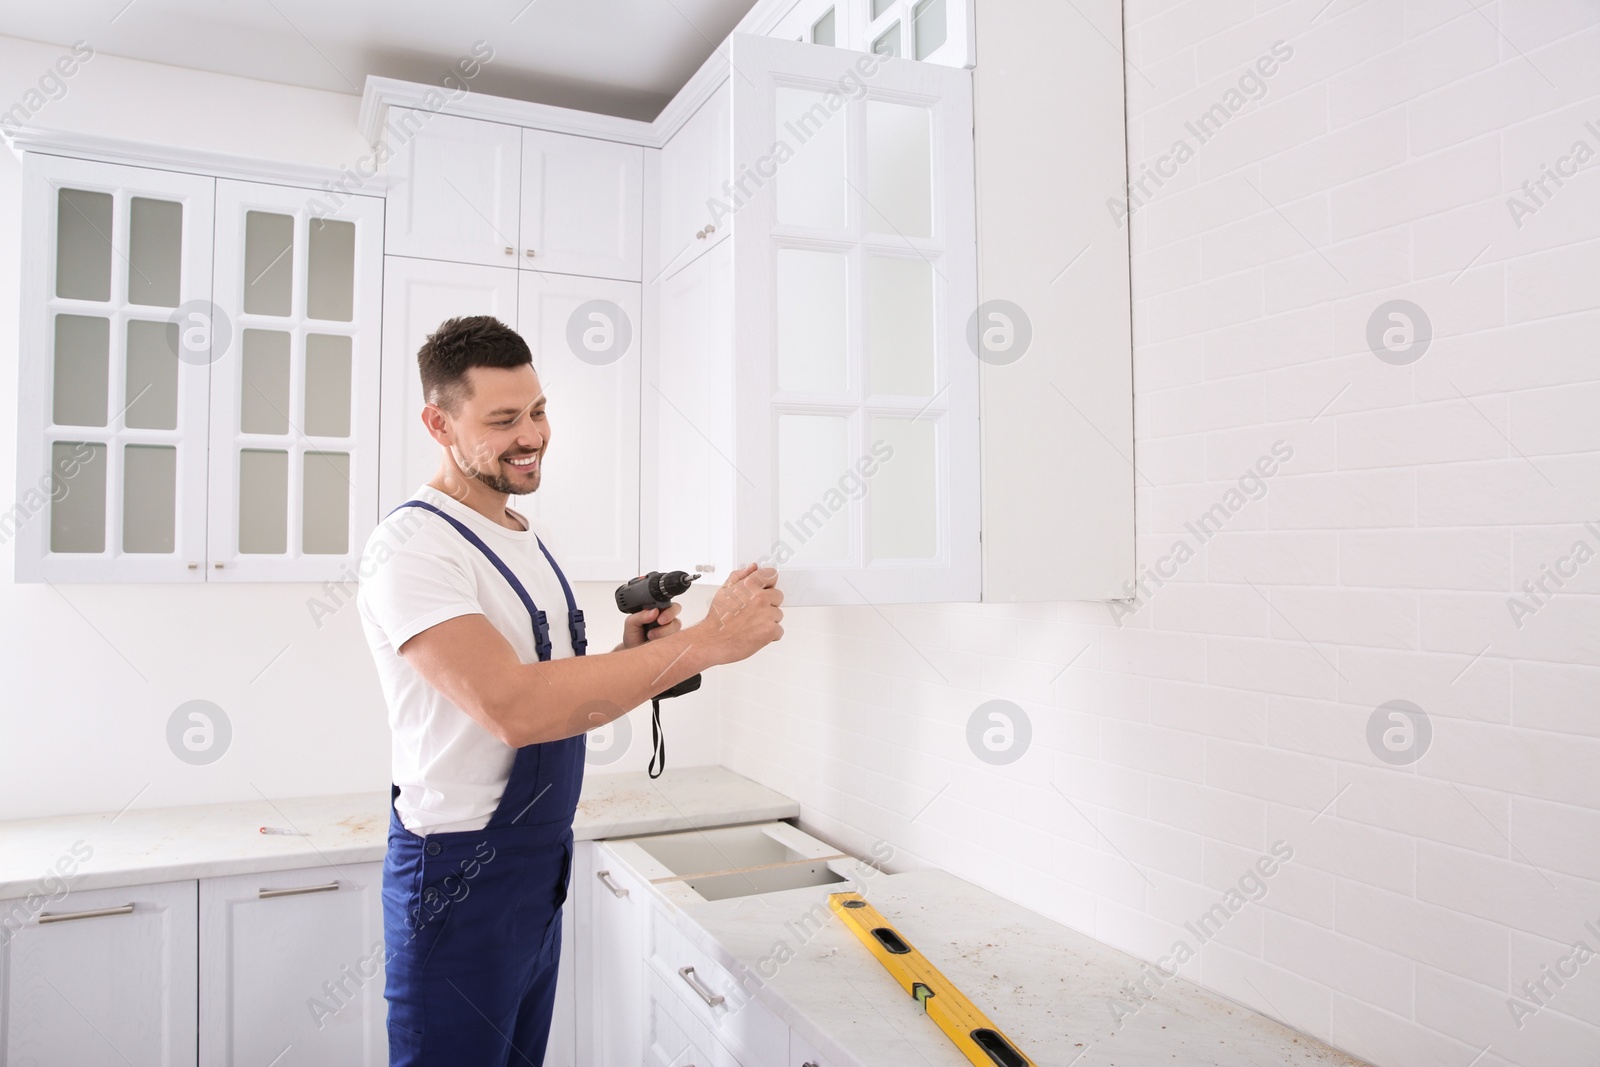 Photo of Worker installing handle on cabinet door with screw gun in kitchen